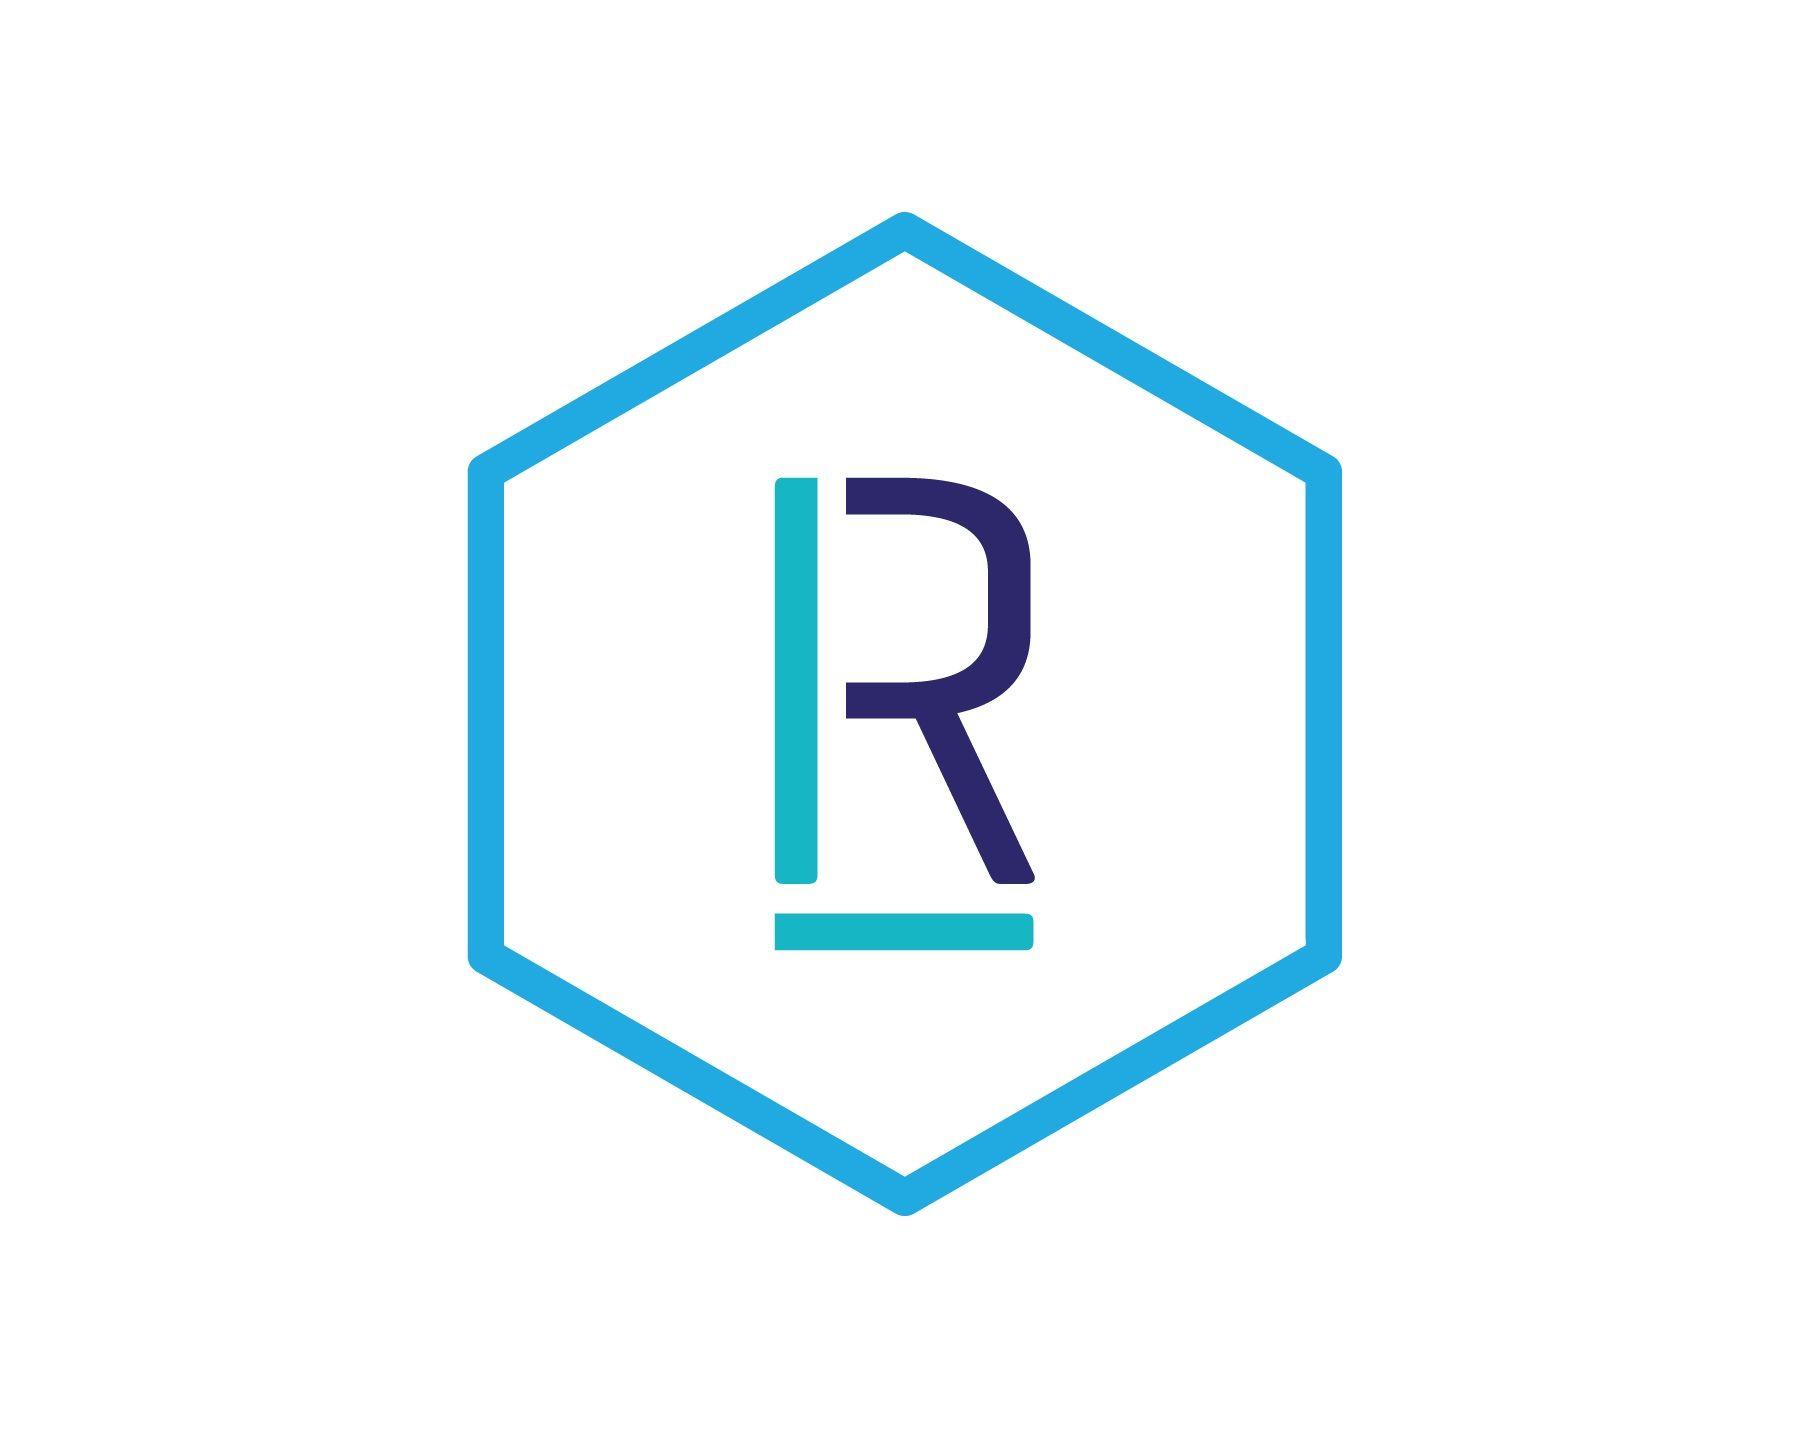 RL Logo - File:RL Leaders Co. logo.jpg - Wikimedia Commons